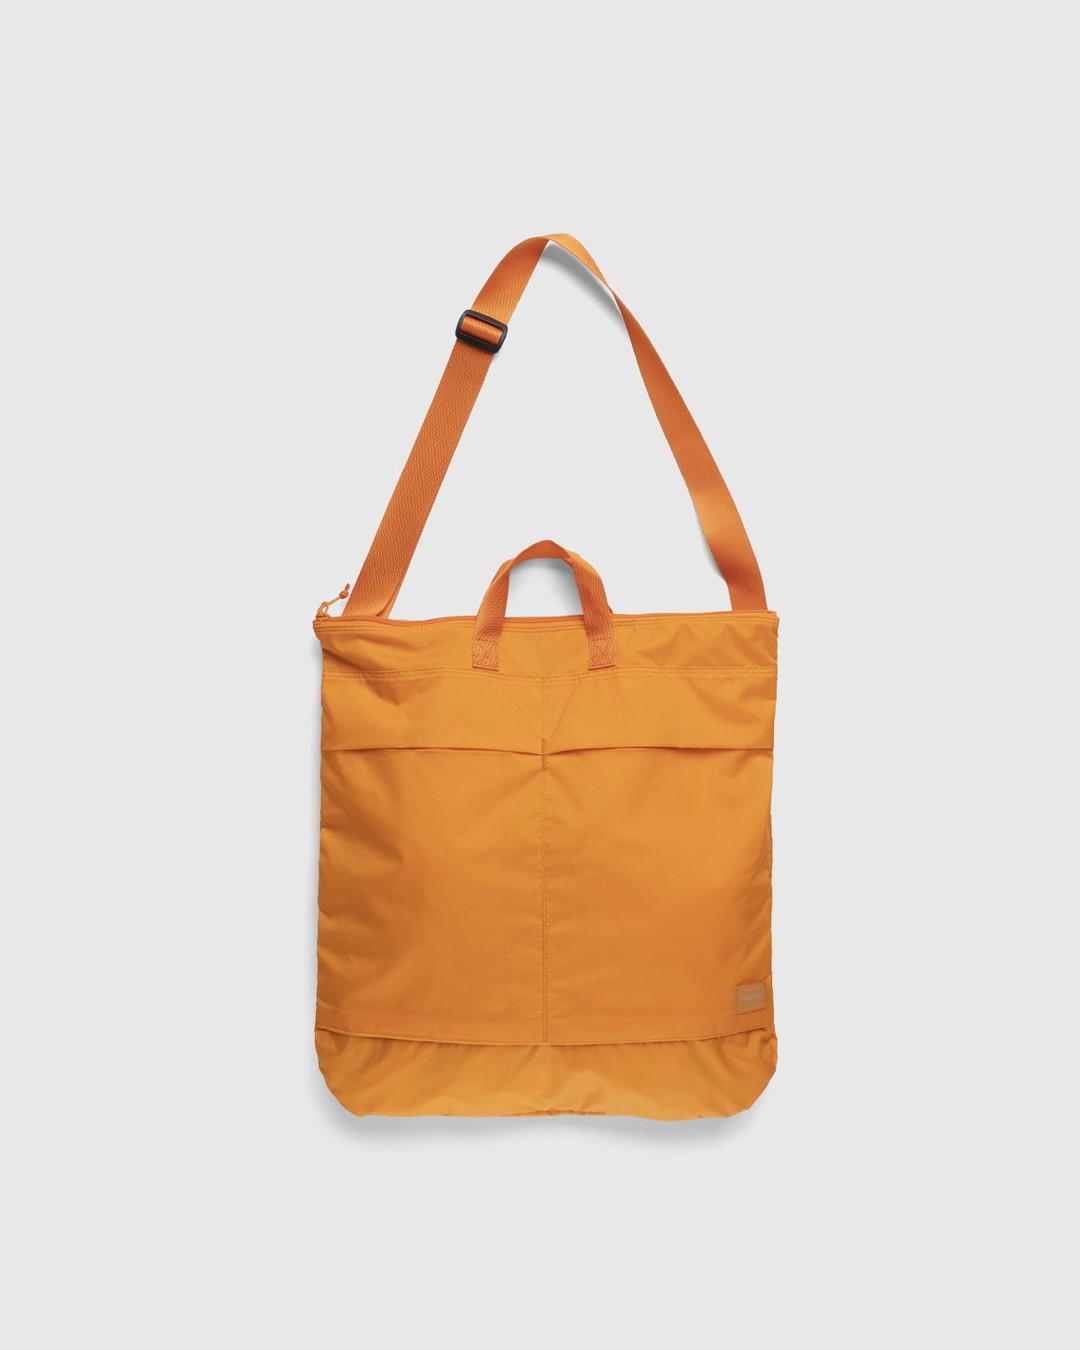 Porter-Yoshida & Co. – Flex 2-Way Helmet Bag Orange